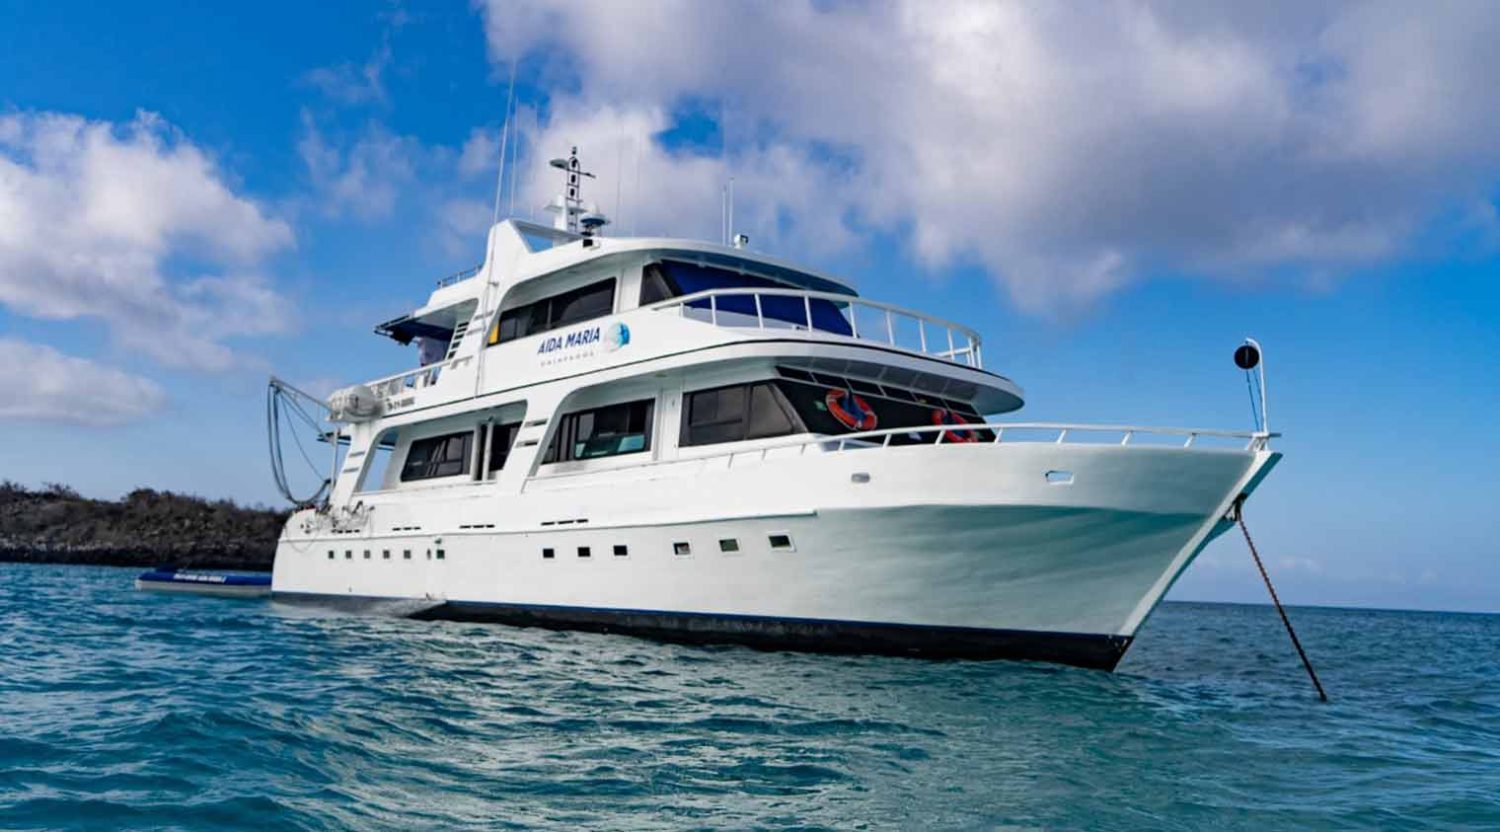 aida maria yacht of galapagos islands